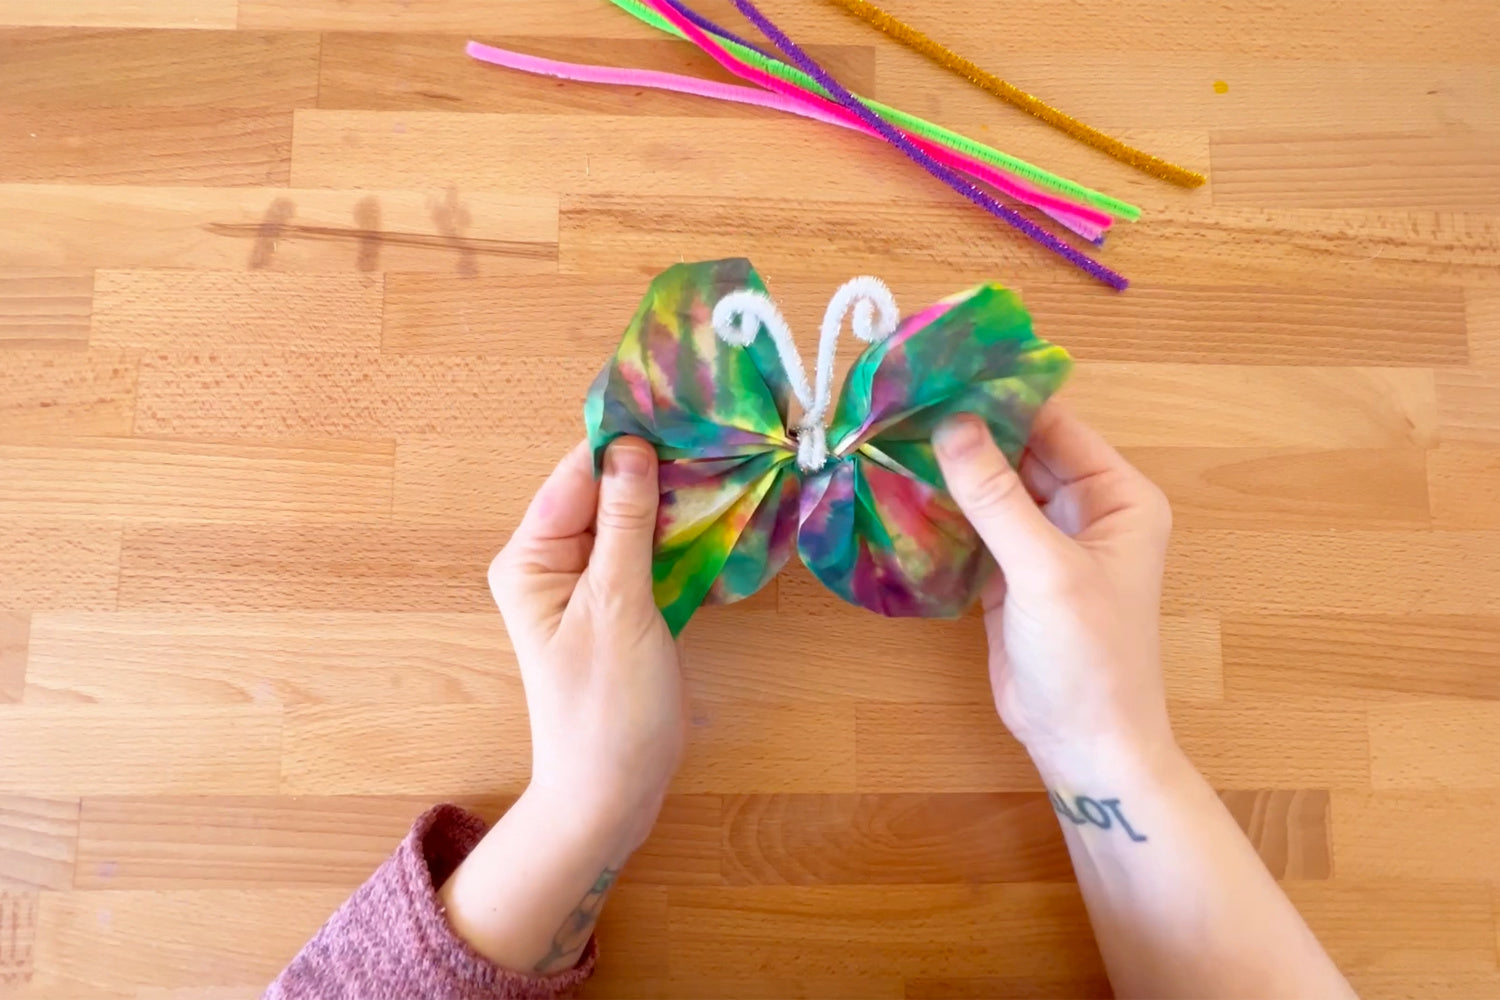 Assemble the tie-dye paper butterfly